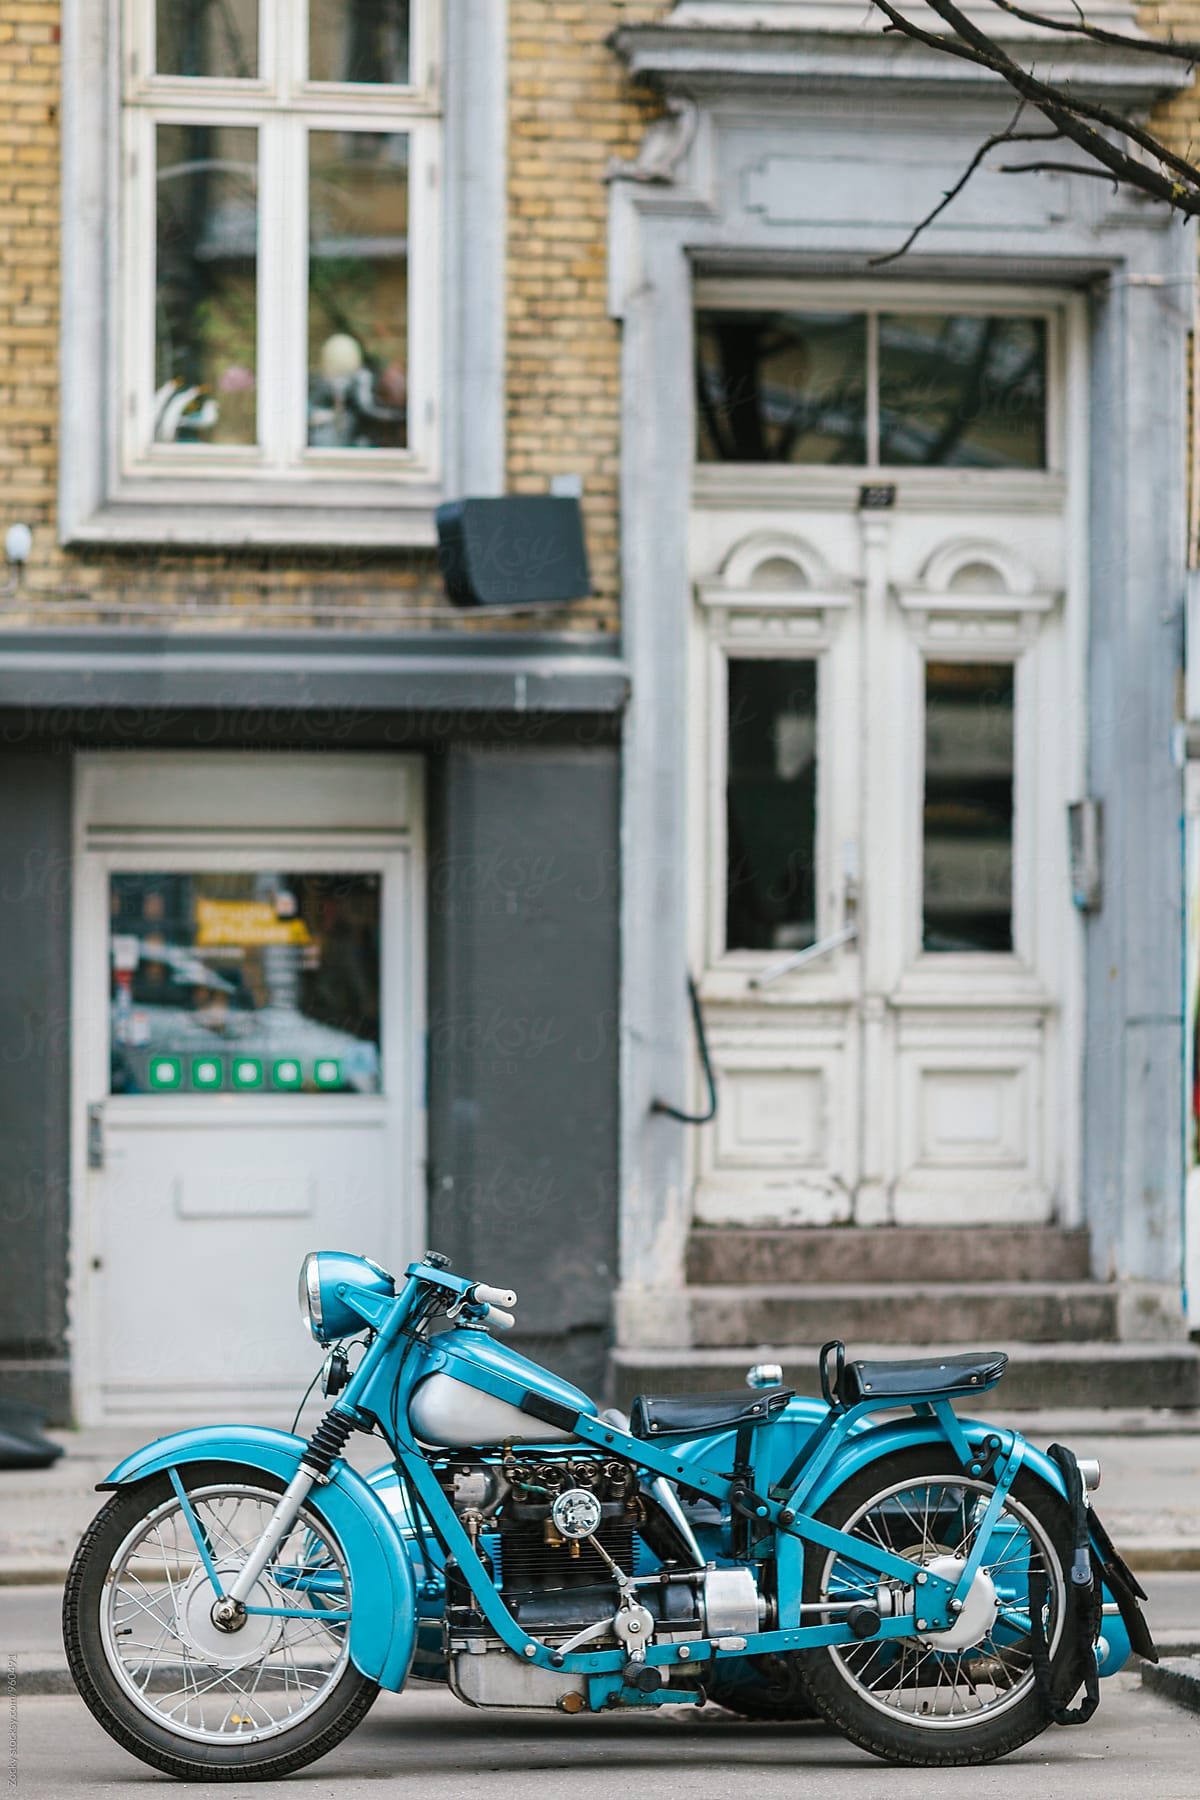 Vintage motorcycle on street.